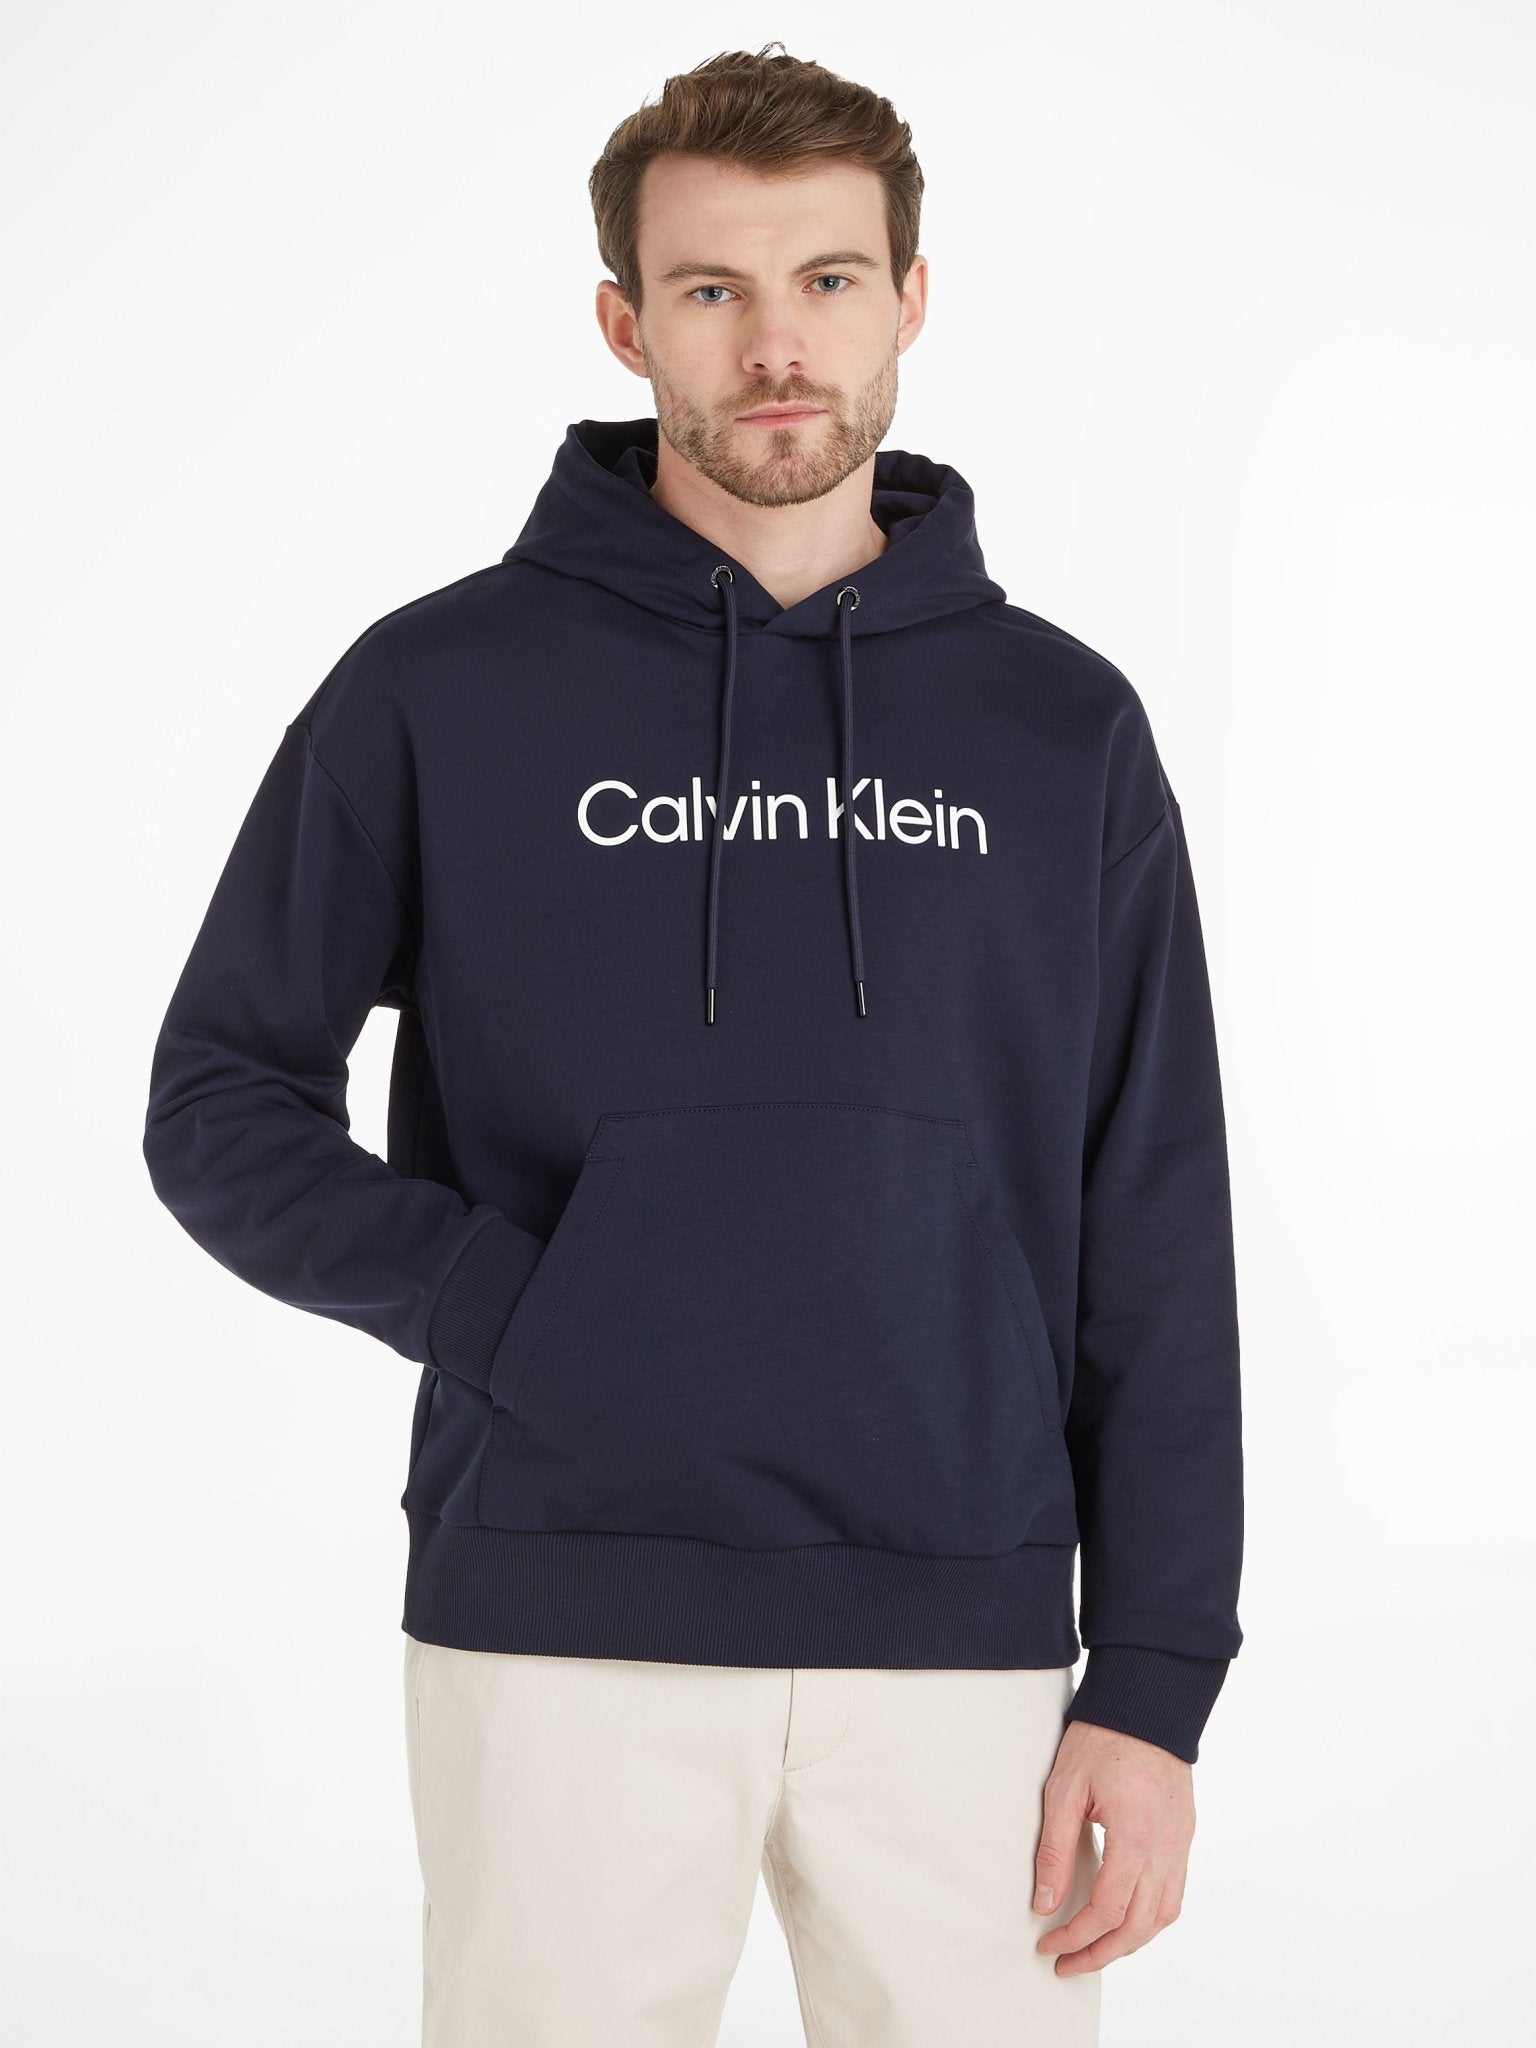 Calvin Klein Logo Hoodie - Matt O'Brien Fashions